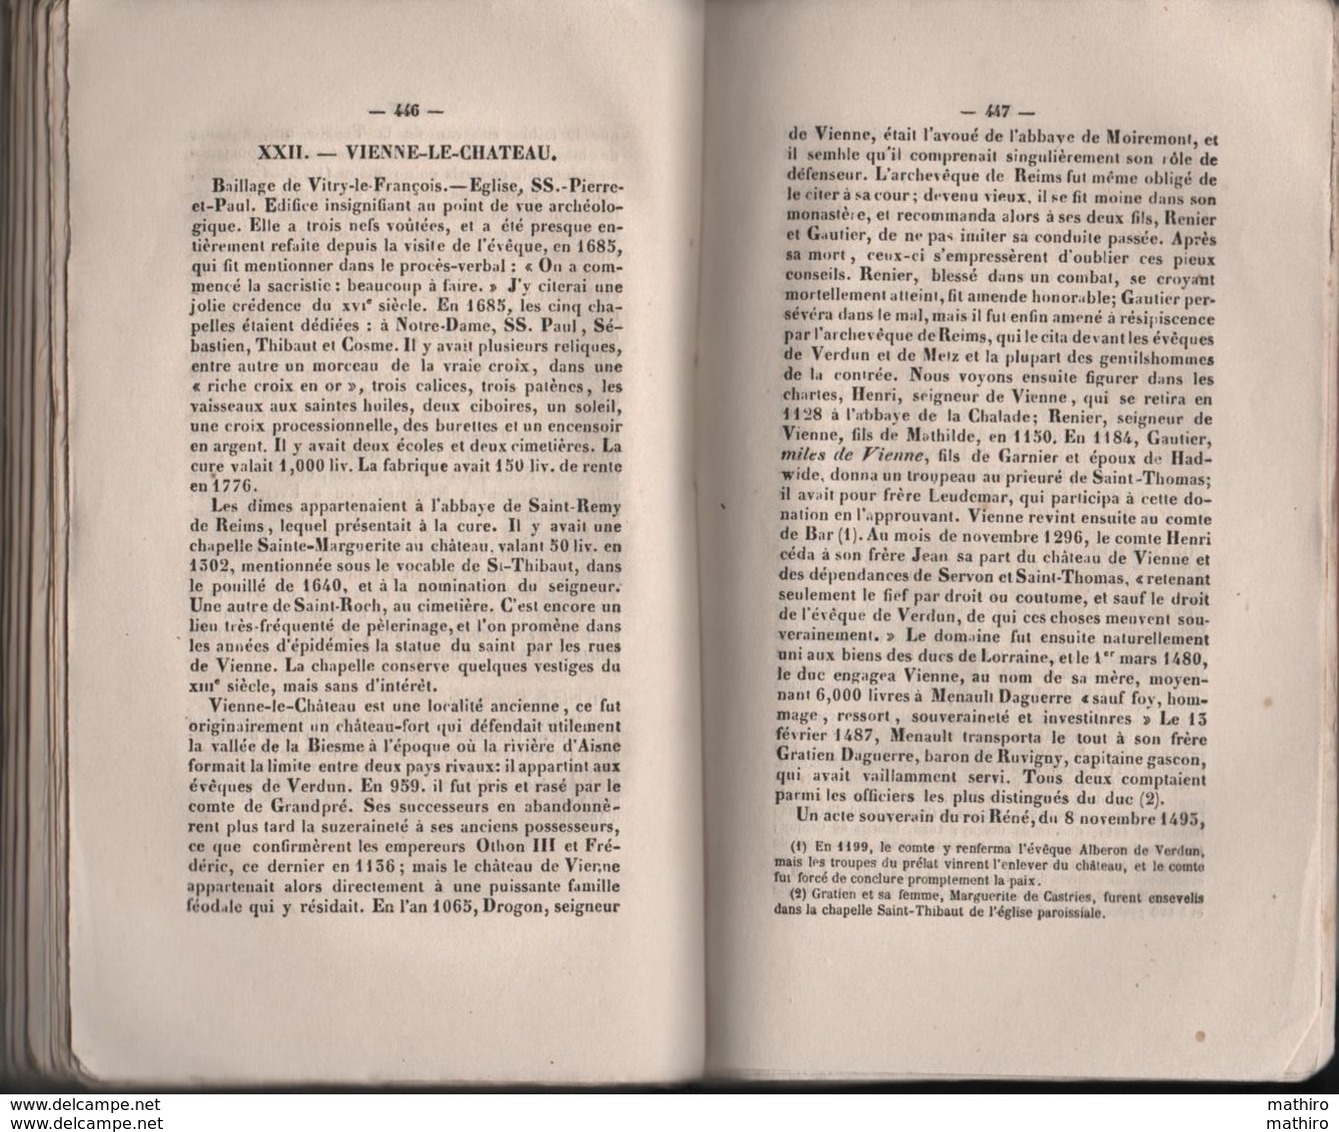 Annuaire administratif statistique historique de la Marne de 1865 ;historique des communes du canton de Ville sur Tourbe